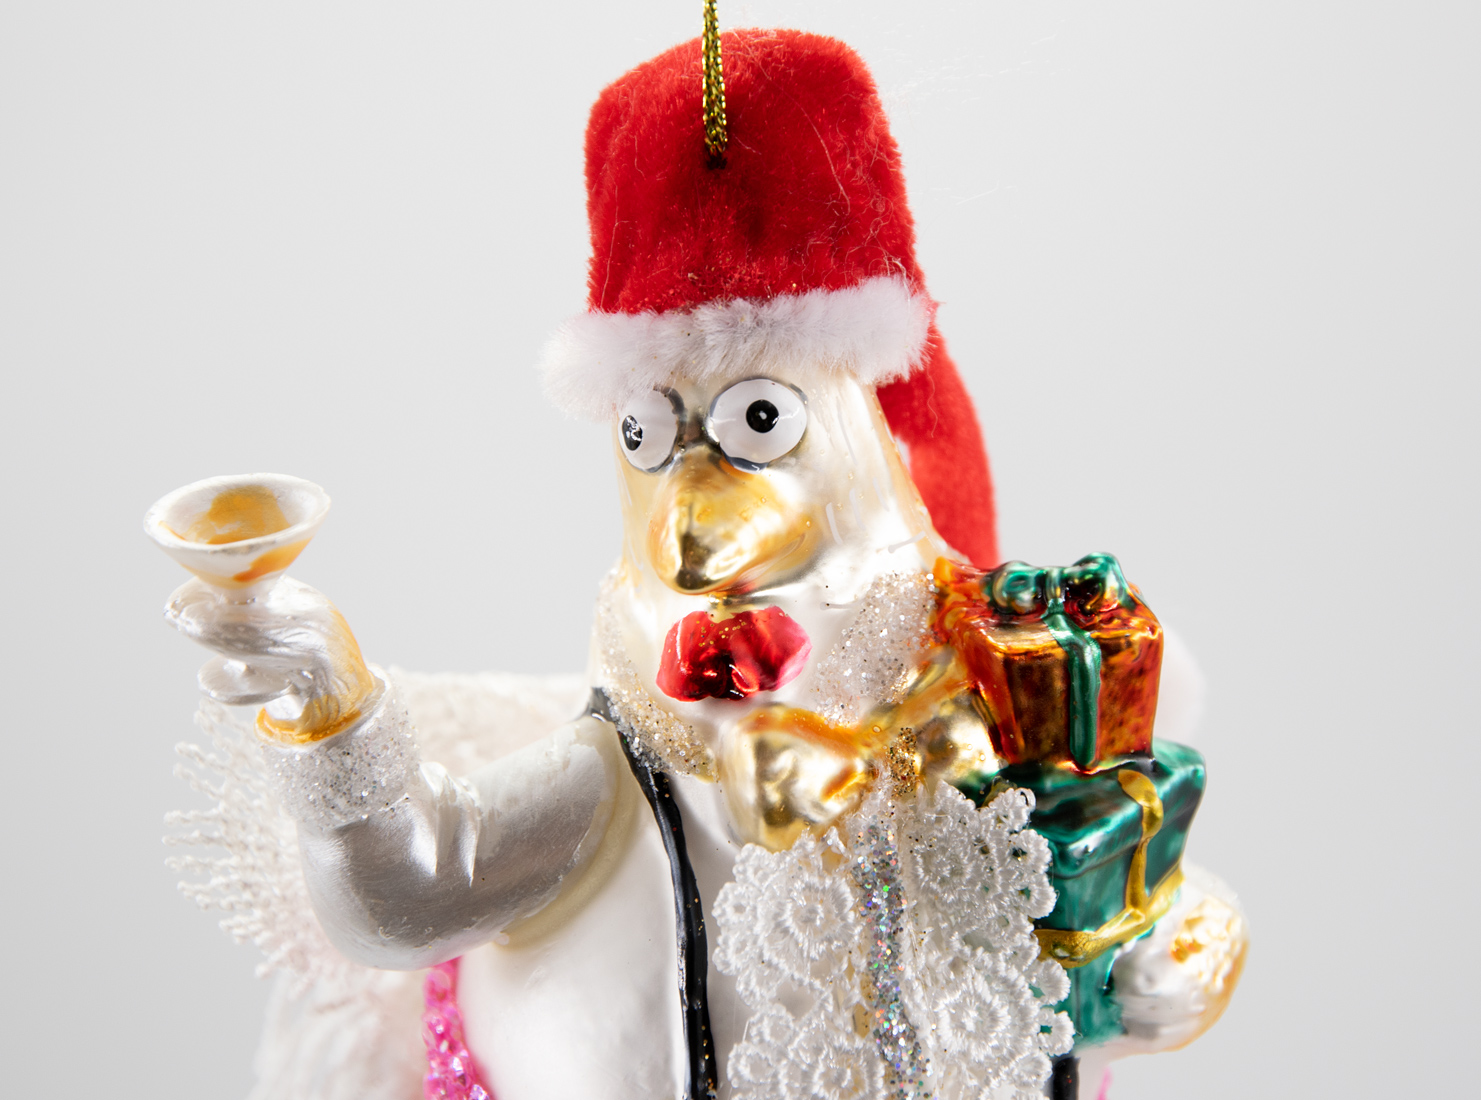 Weihnachtsschmuck Hänger Huhn Henne mit Weihnachtsmütze